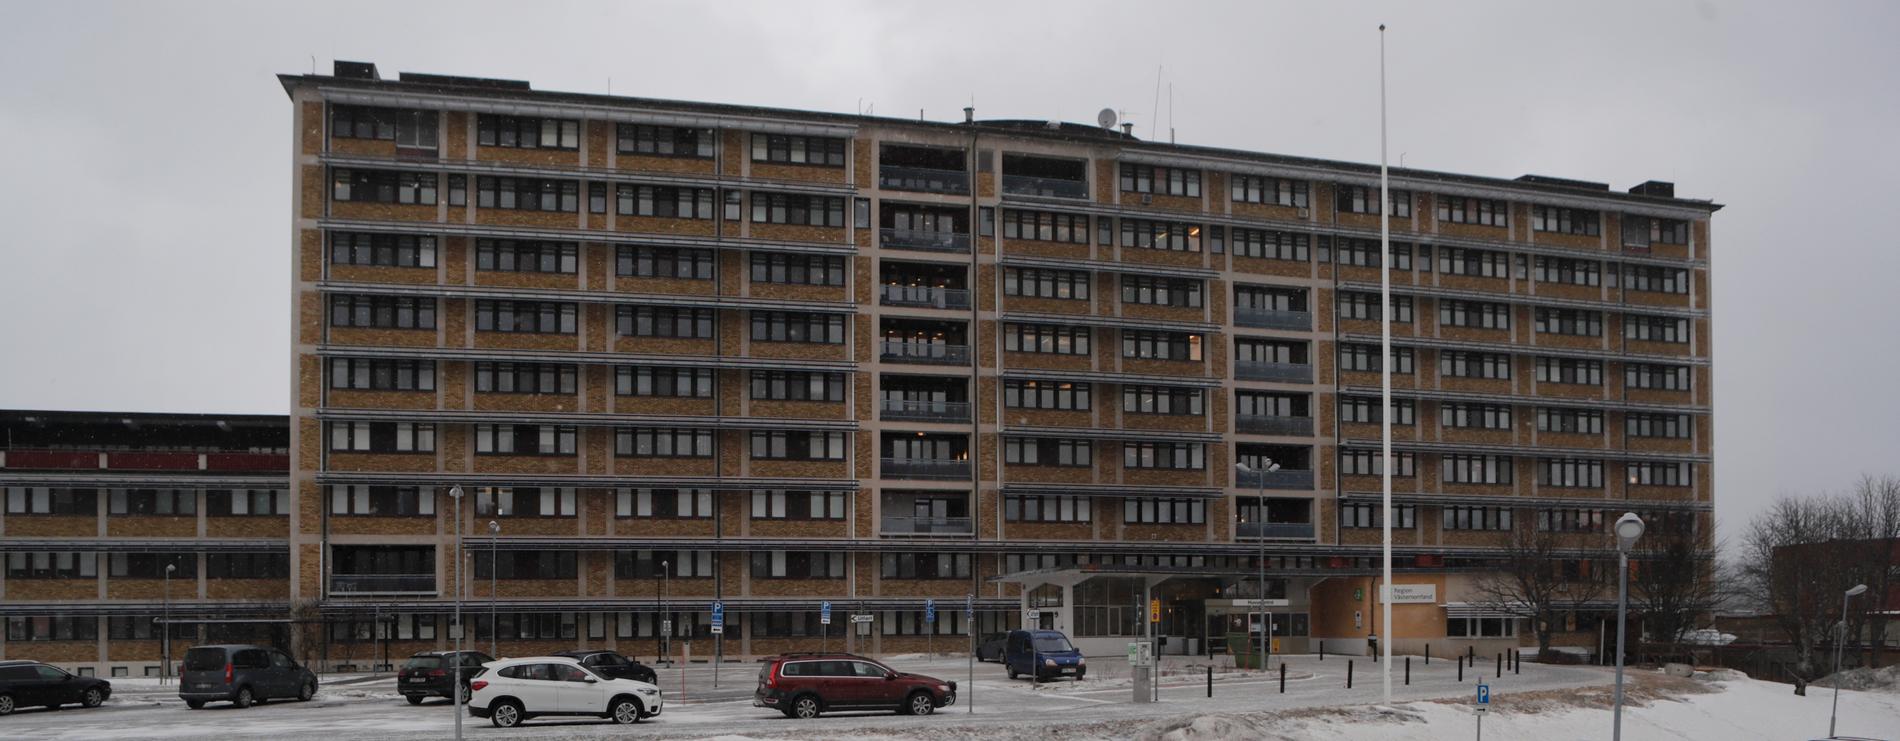 Sollefteå sjukhus är ett av tre sjukhus inom Region Västernorrland.